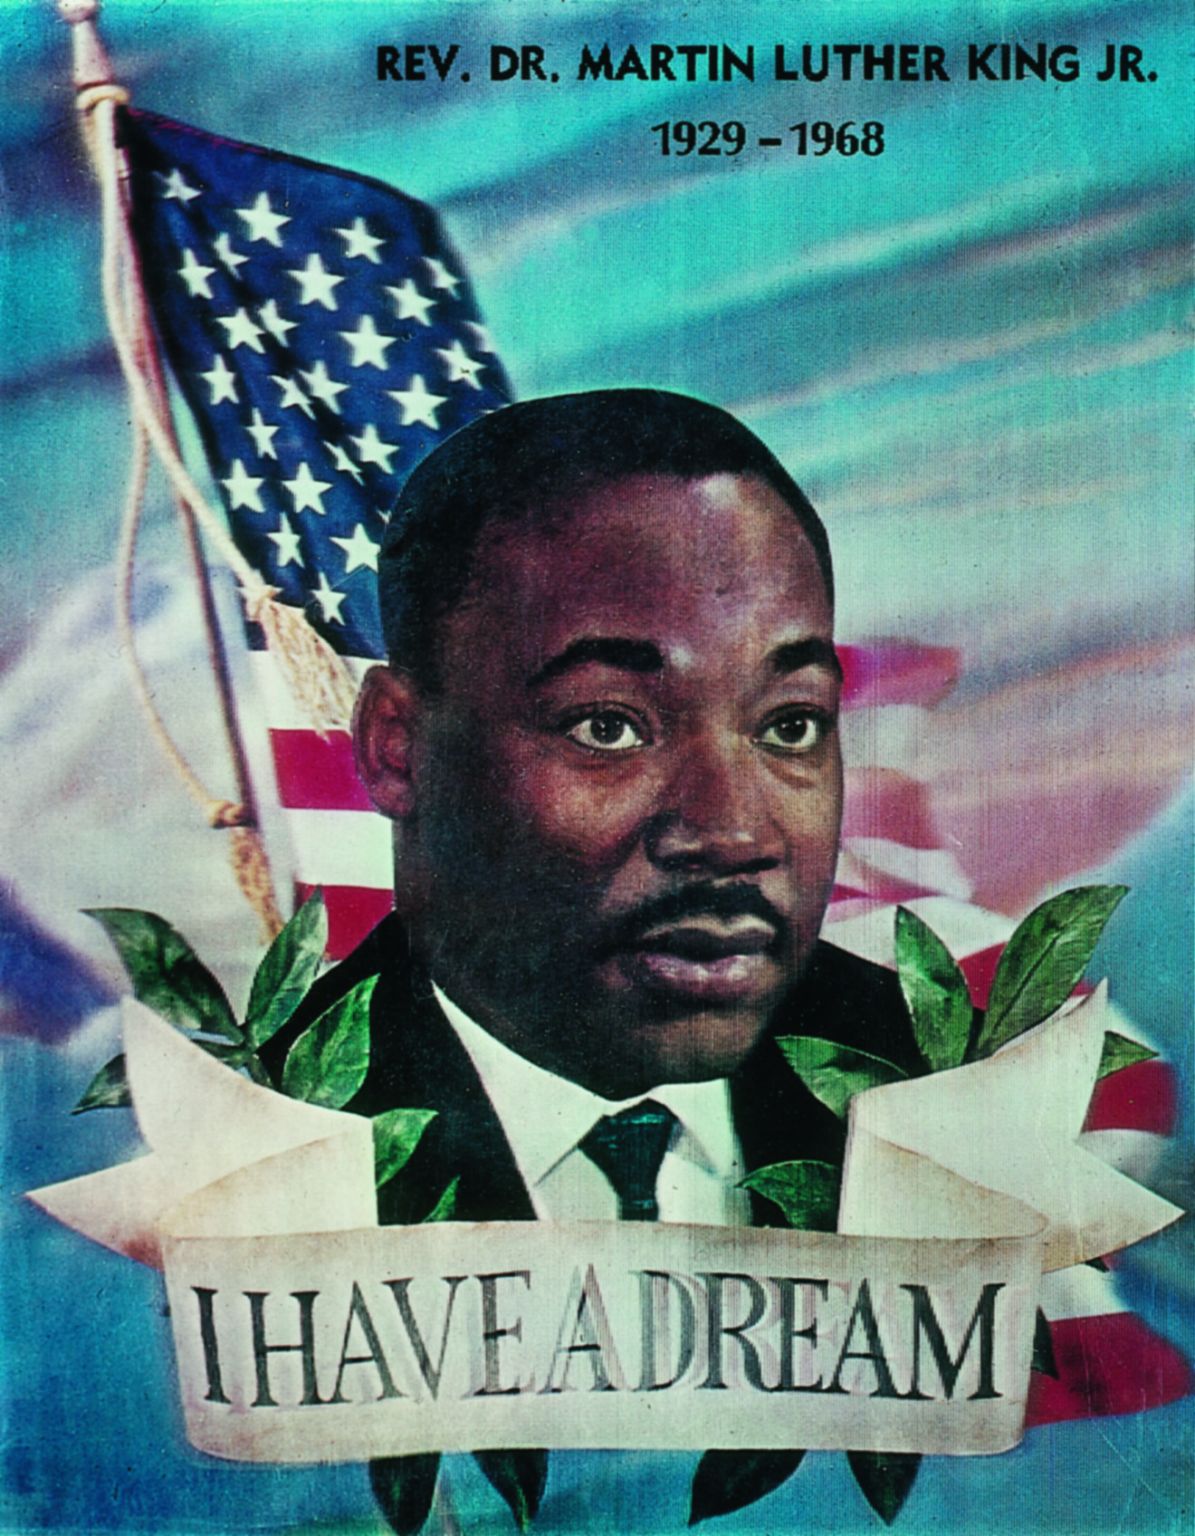 affiche reprenant la célèbre phrase de Martin Luther King : « I have a dream » (je fais le rêve…).